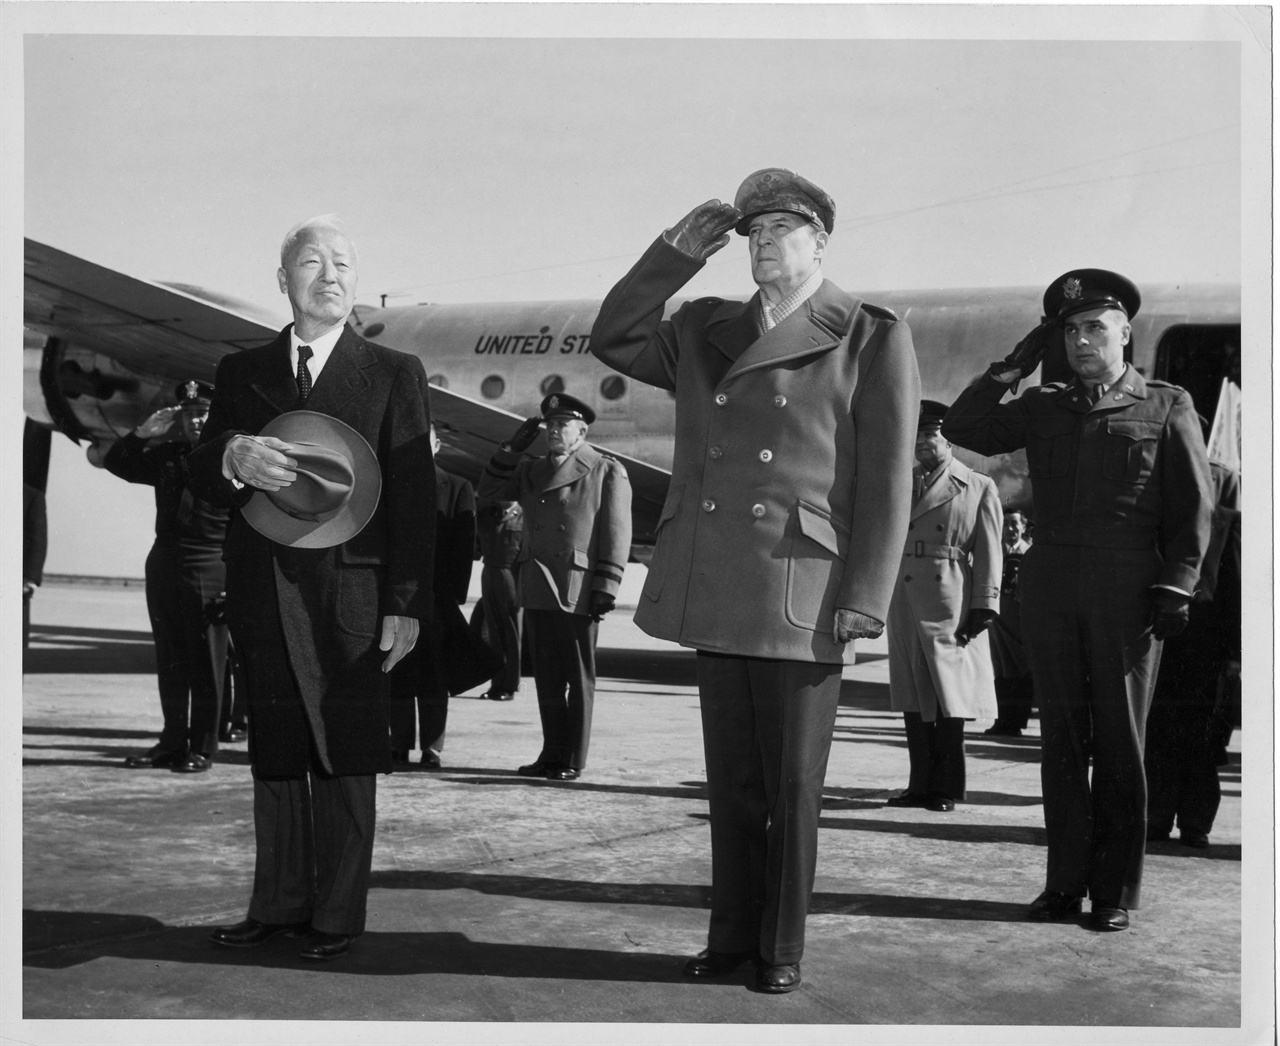  1950. 2. 18. 일본 도쿄. 이승만 대통령(왼쪽)이 도쿄의 맥아더 장군(오른쪽)을 예방한 뒤 귀국에 앞서 하네다공항 활주로에서 양국 국기에 경례하고 있다. 